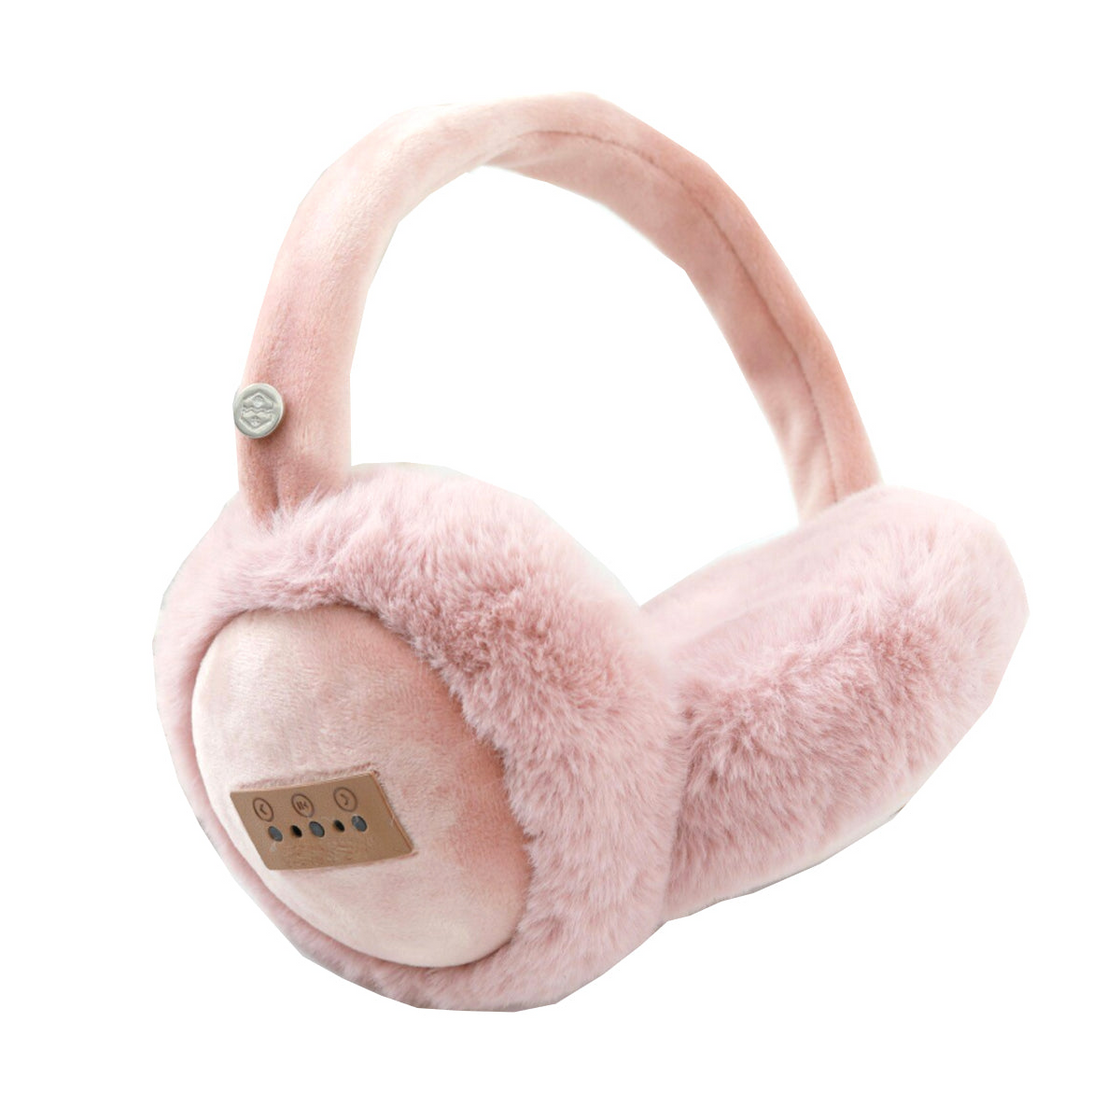 Fuzzy Wuzzy Bluetooth Headphones - Cozy and Versatile Headphones